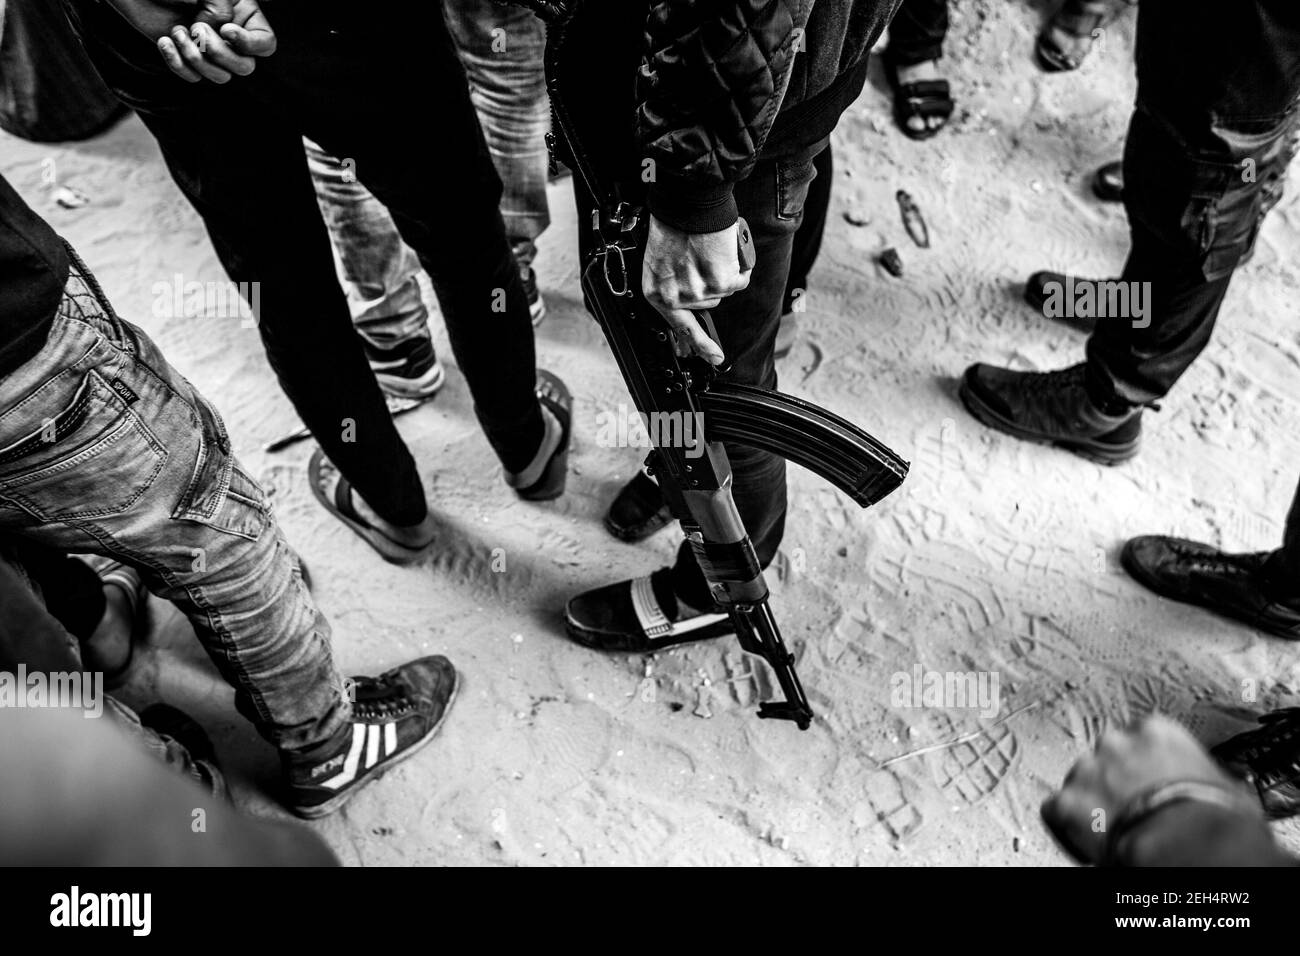 Ein Mann mit Kalaschnikow in der Hand bei der Beerdigung von Jamal Affana (15 Jahre alt) starb am 13. Mai 2018 bei Demonstrationen am Grenzzaun von Gaza mit Israel am vergangenen Freitag an einer Schusswunde in Rafah, Gaza. Jamal wurde am Freitag von einem israelischen Scharfschützen getötet, während er an den Demonstrationen teilnahm. Für die 1,9 Millionen Palästinenser, die im Gazastreifen leben, ist das Leben nach 10 Jahren israelischer Blockade in der Region zu einem täglichen Kampf um Nahrung, Strom und Geld geworden. Die Demonstrationen führten bisher zu 40 Toten und mehr als 1.700 Verletzten durch die israelische Armee. Schinken Stockfoto